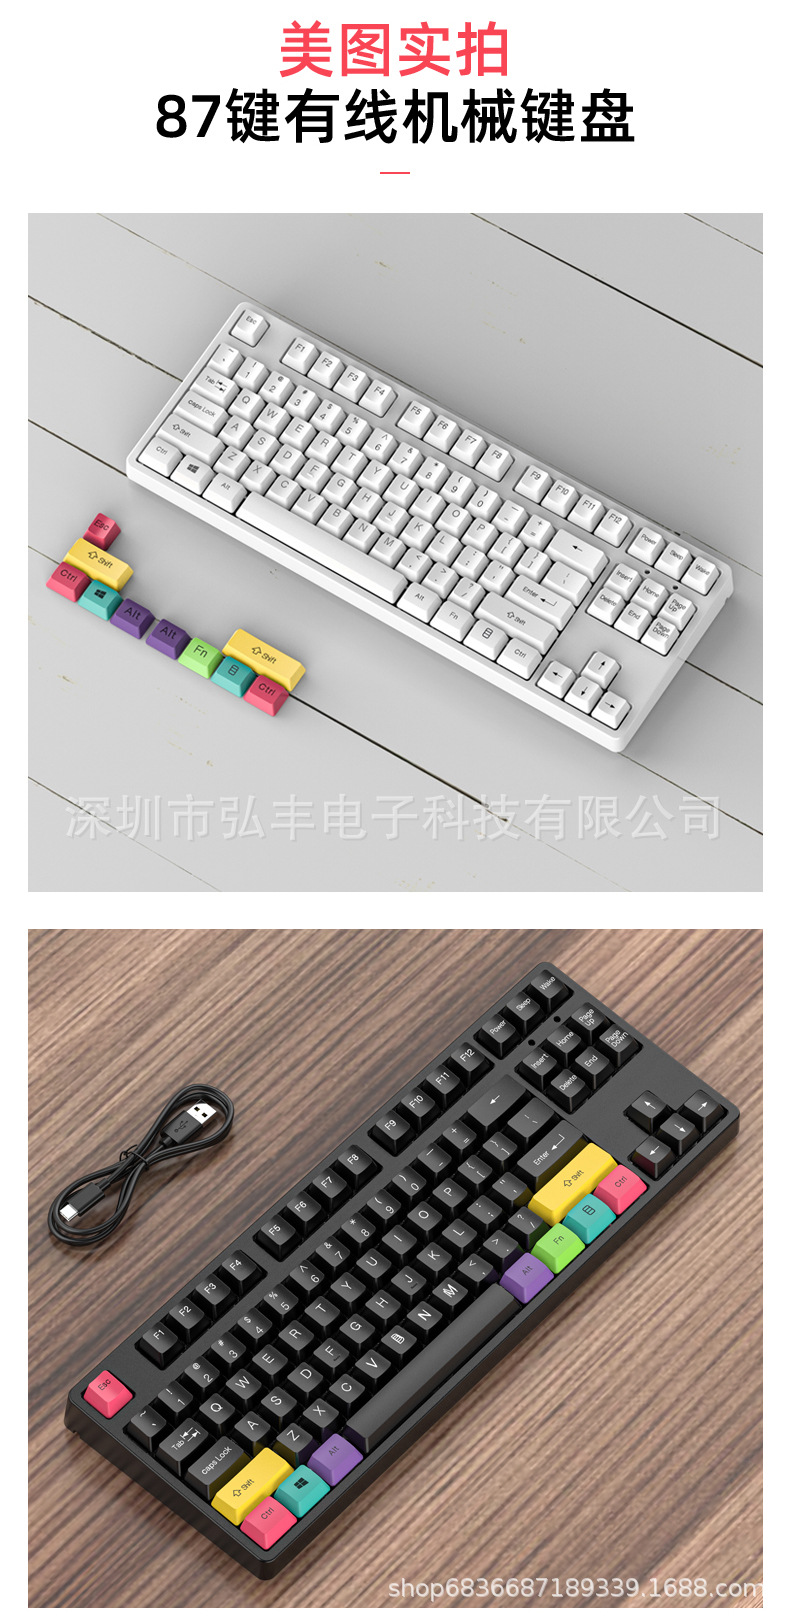 87键有线机械键盘中文_17.jpg